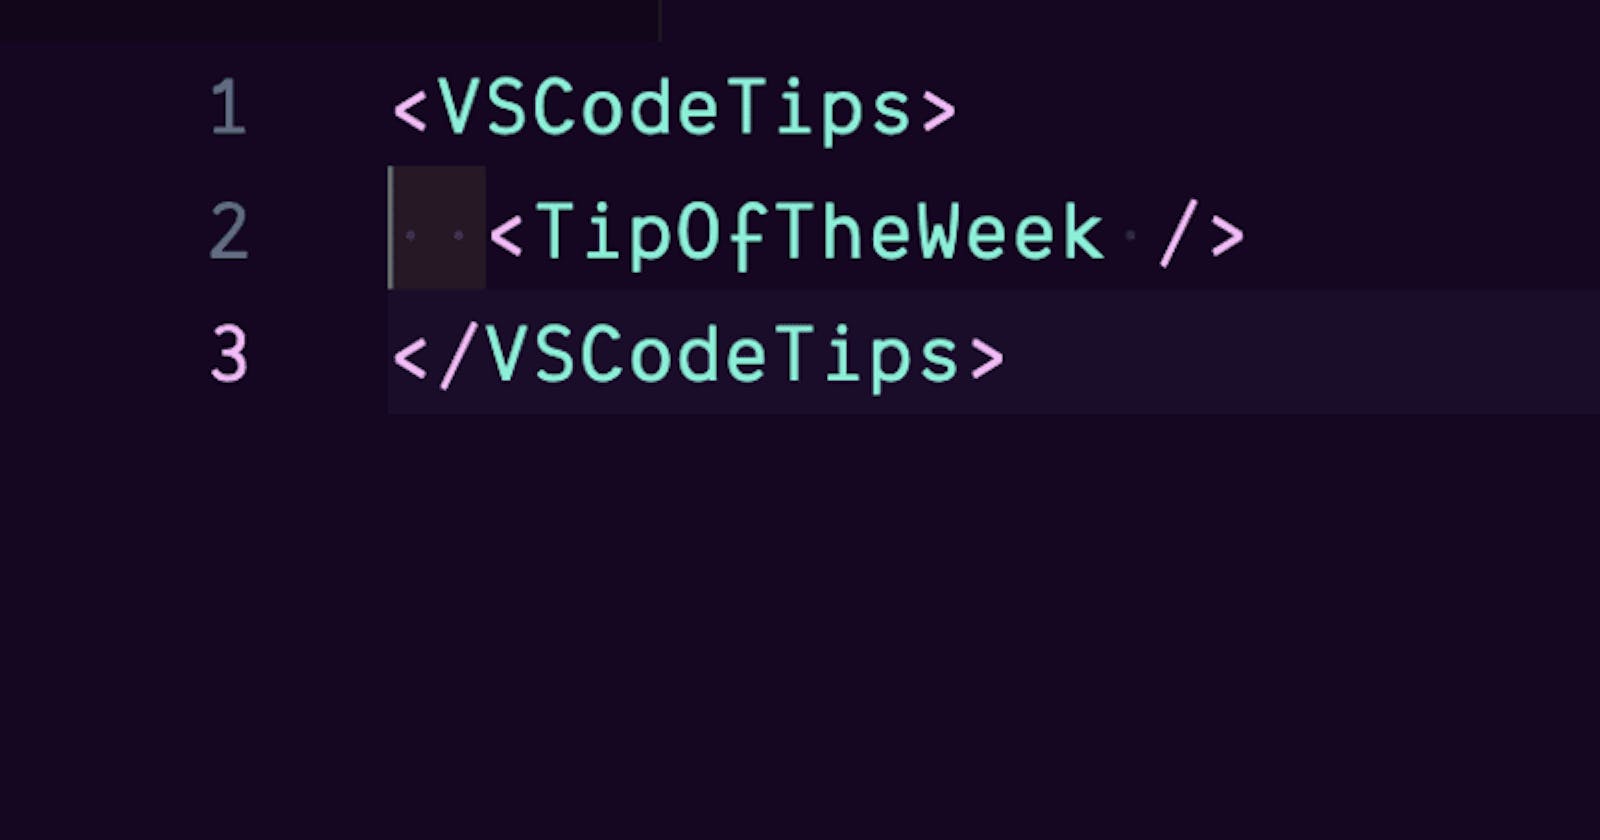 VS Code Tip of the week: vscode.dev